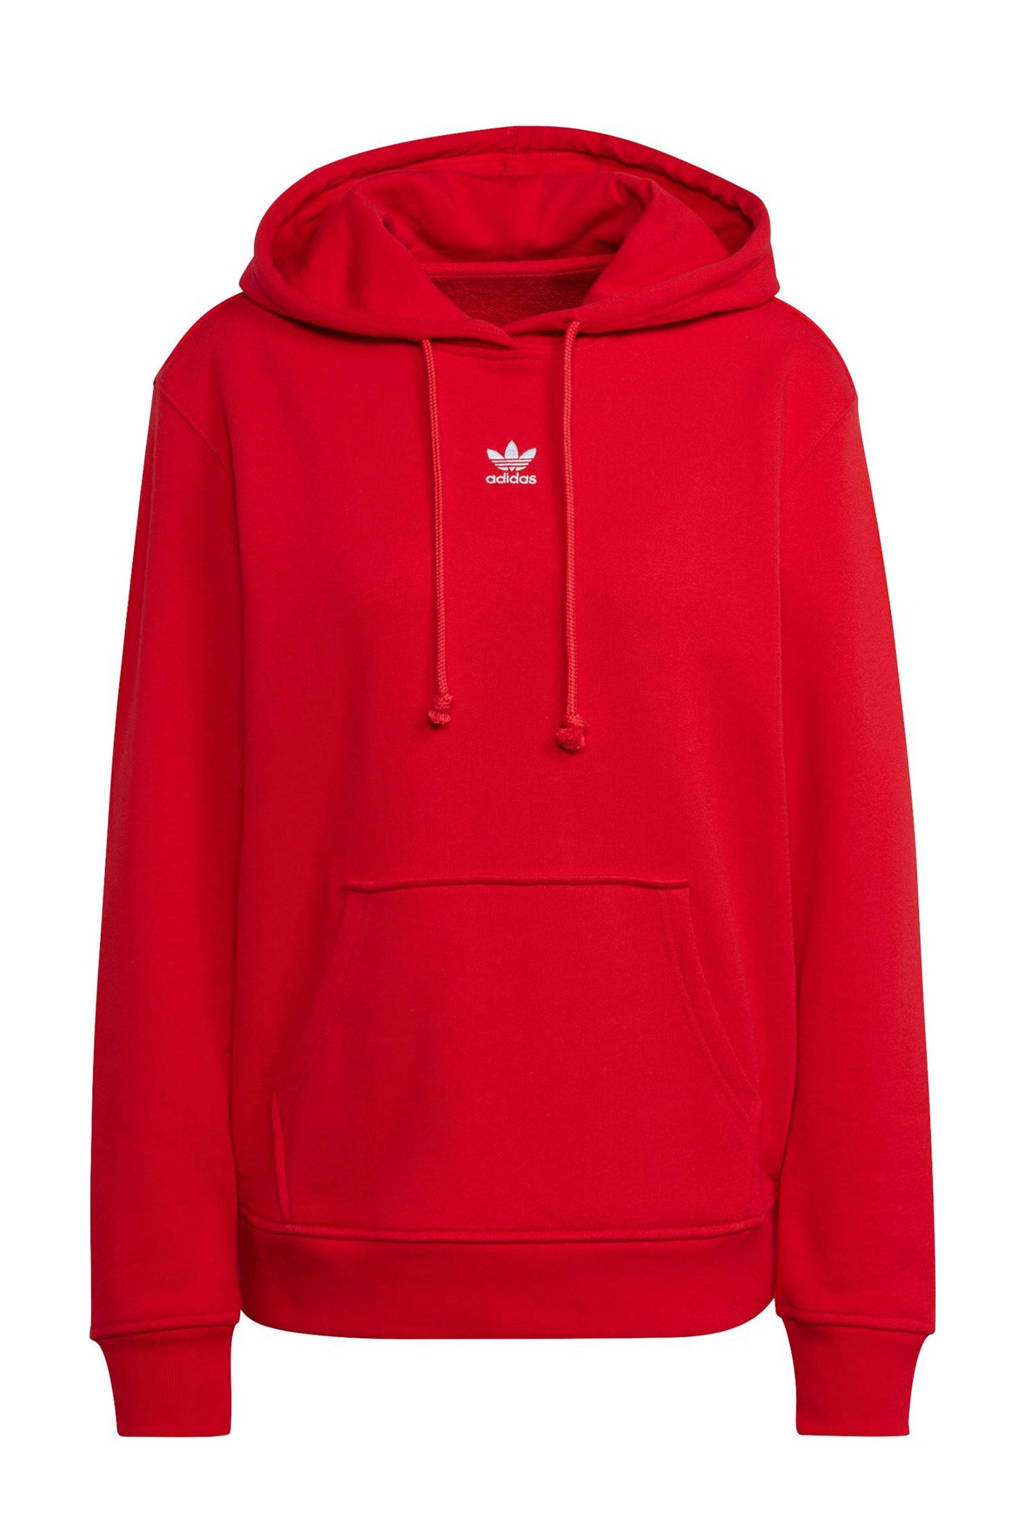 Rode dames adidas Originals hoodie van katoen met lange mouwen, capuchon en geribde boorden